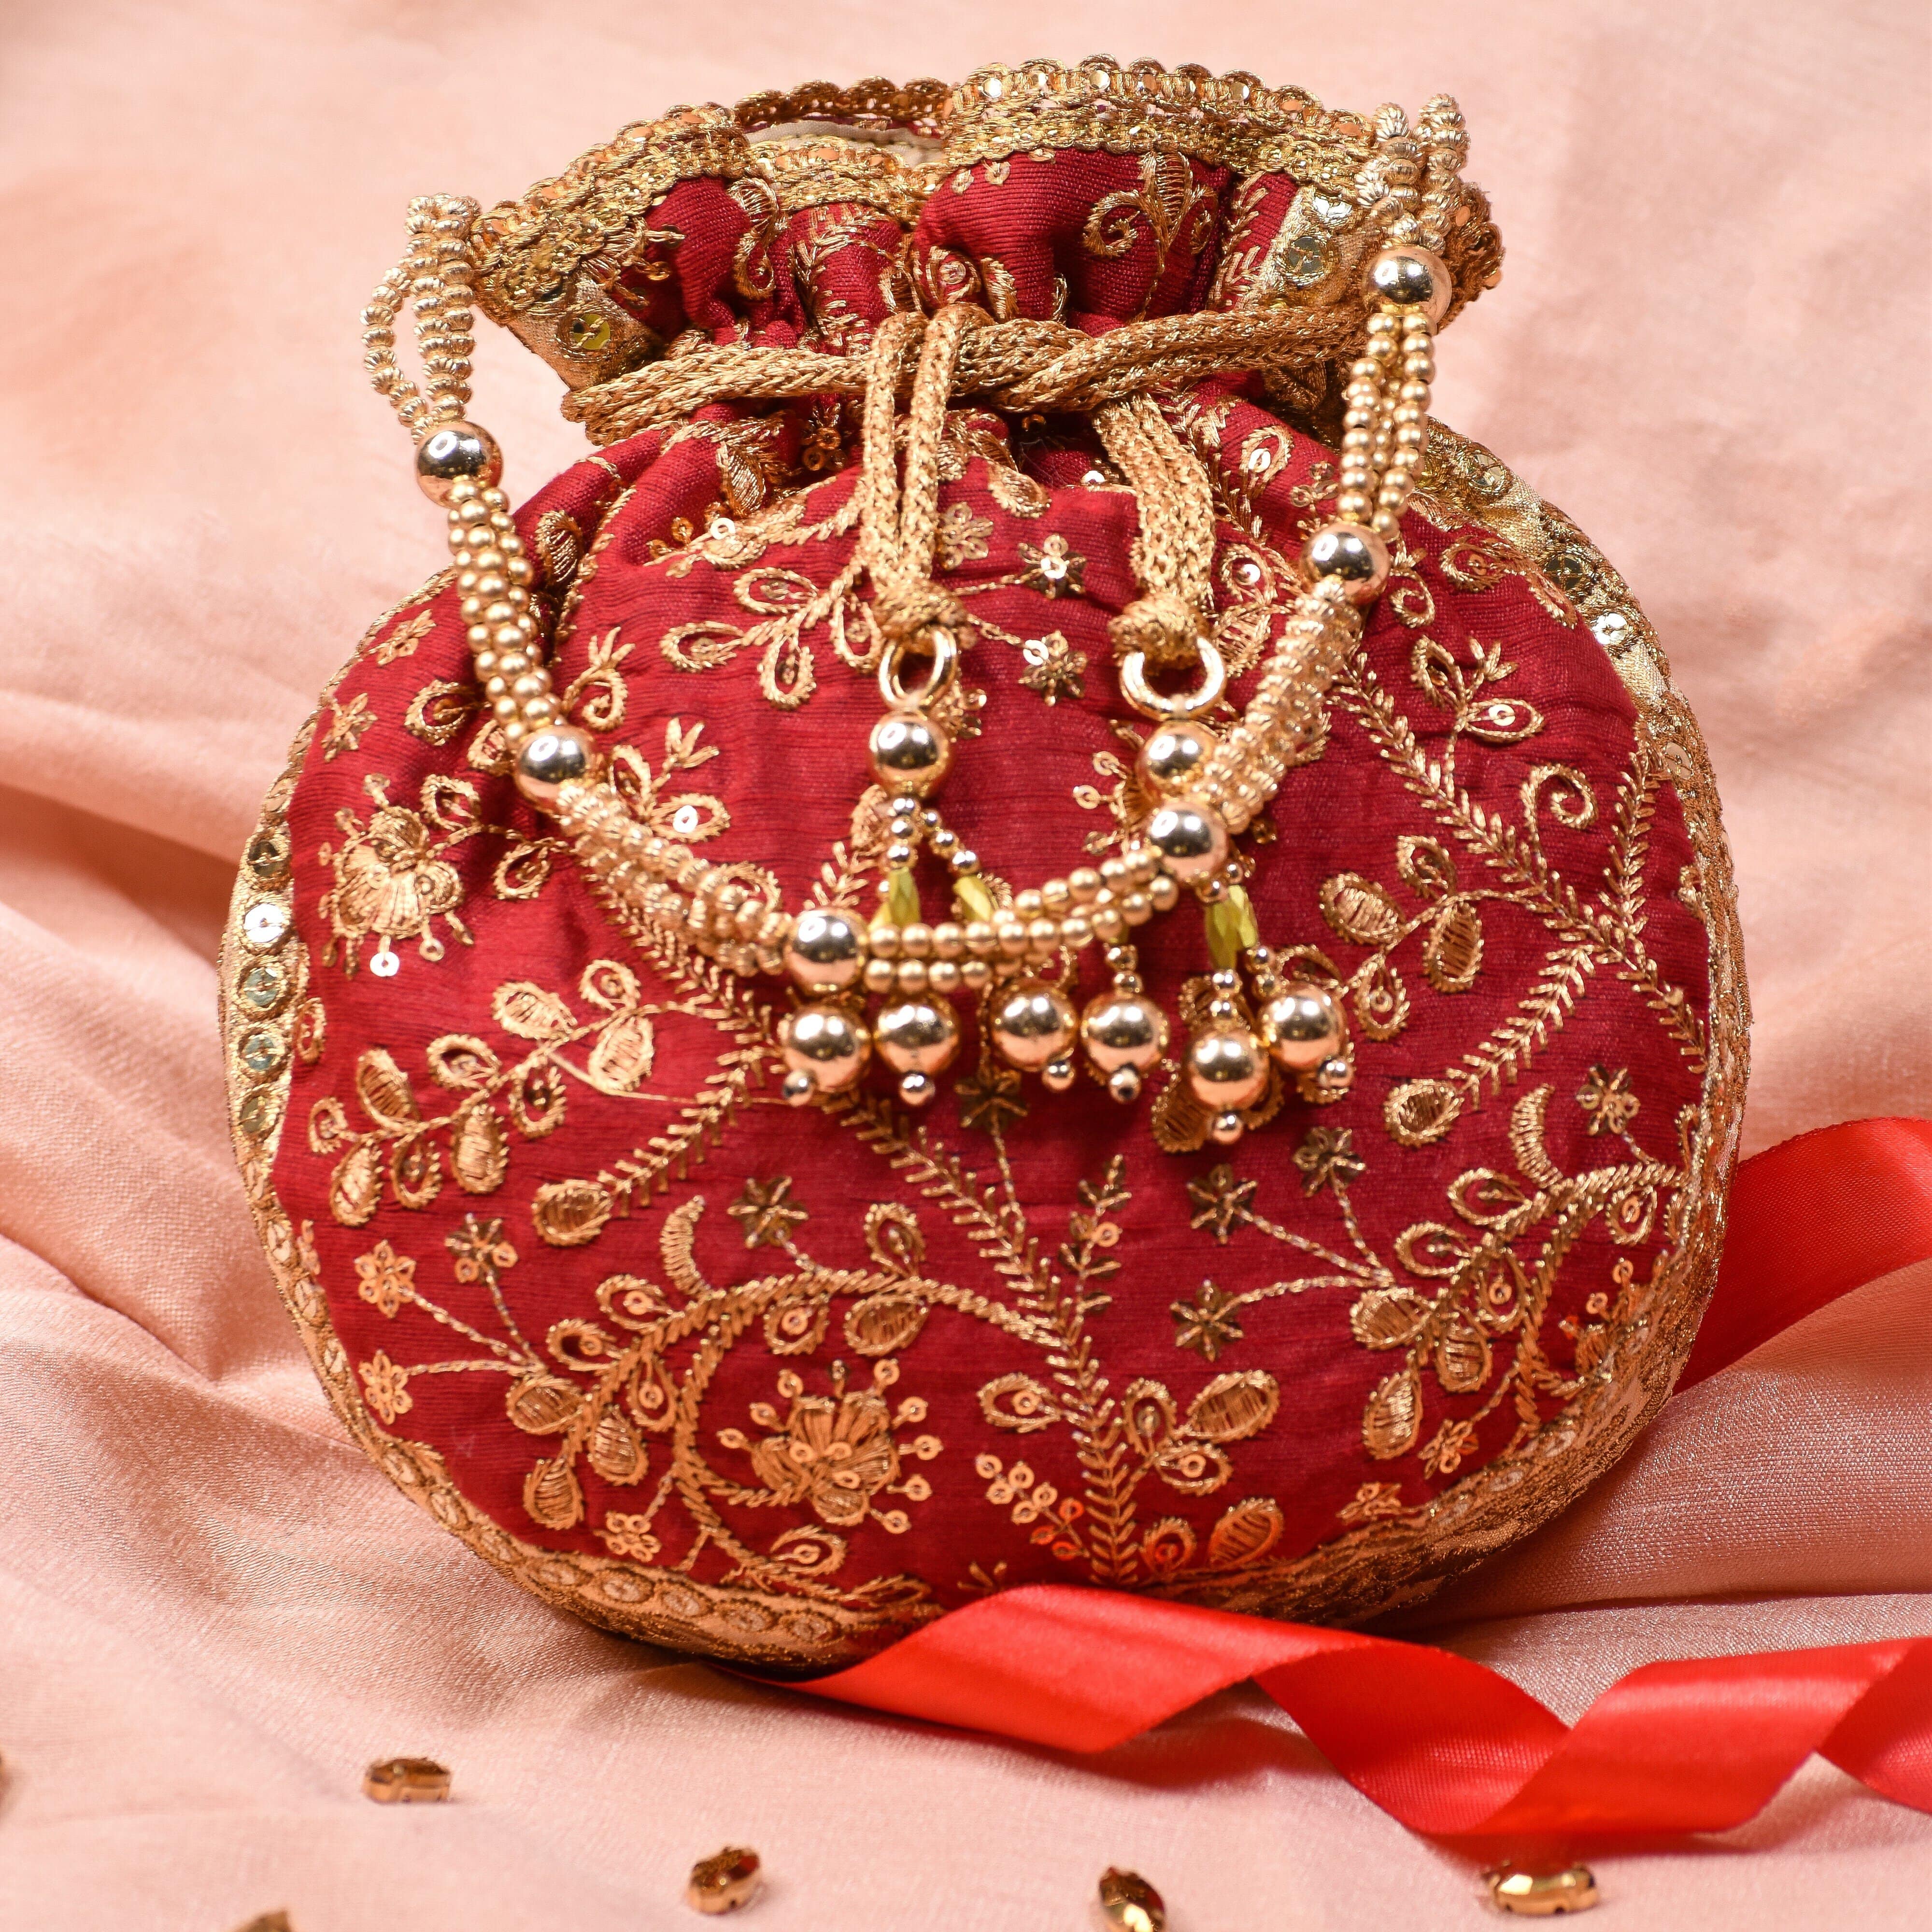 Velvet Bags - Buy Velvet Bags online at Best Prices in India | Flipkart.com